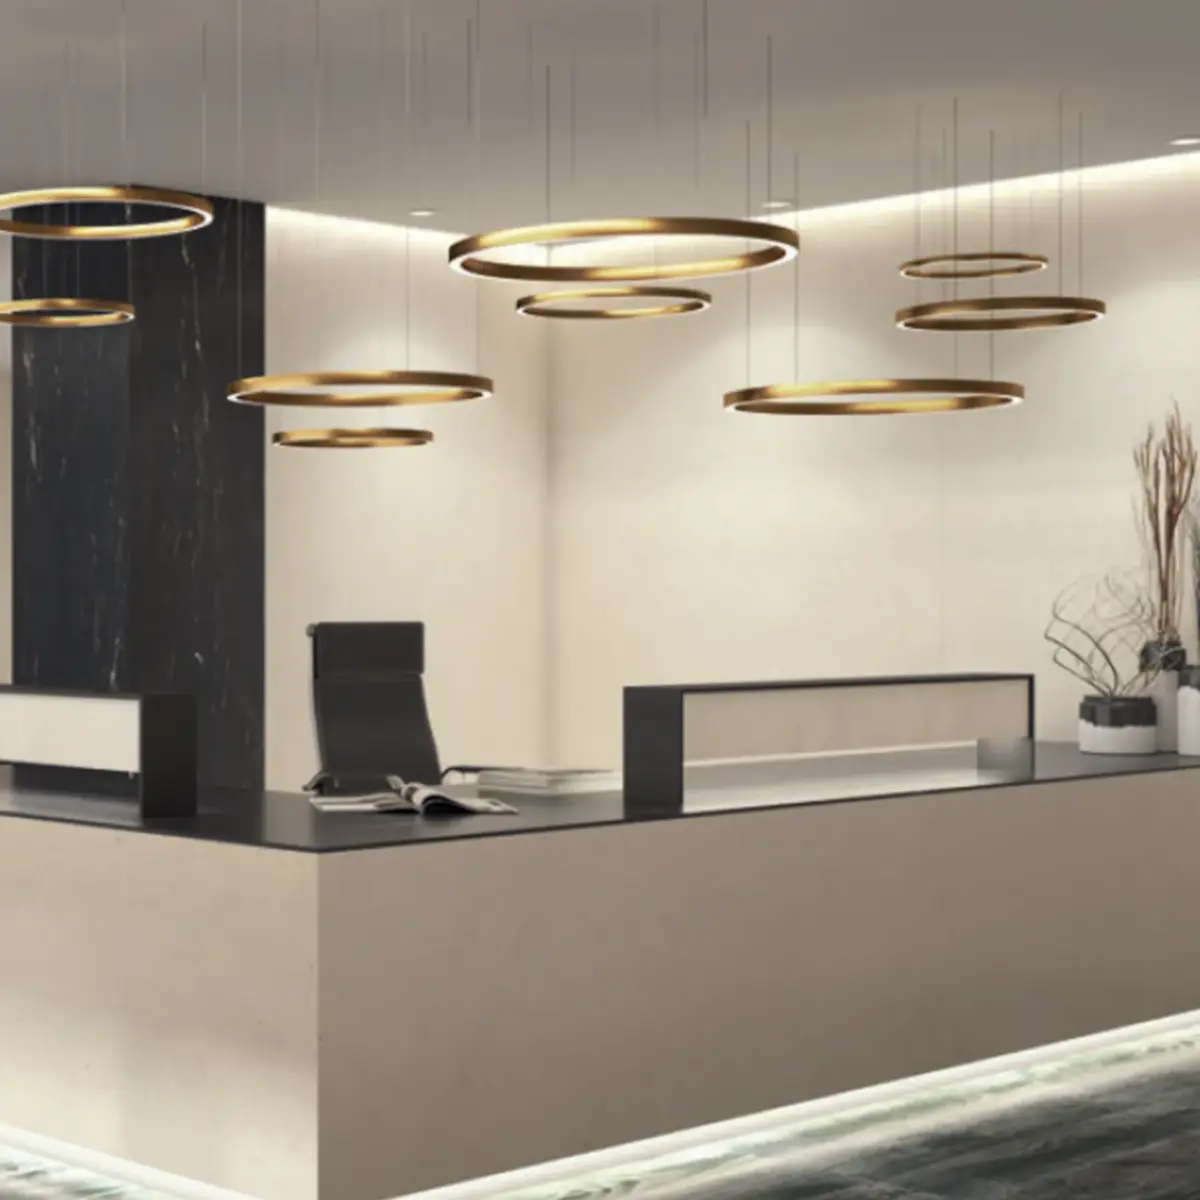 oficinas-coffee-1 ankara diseño y arquitectura interior